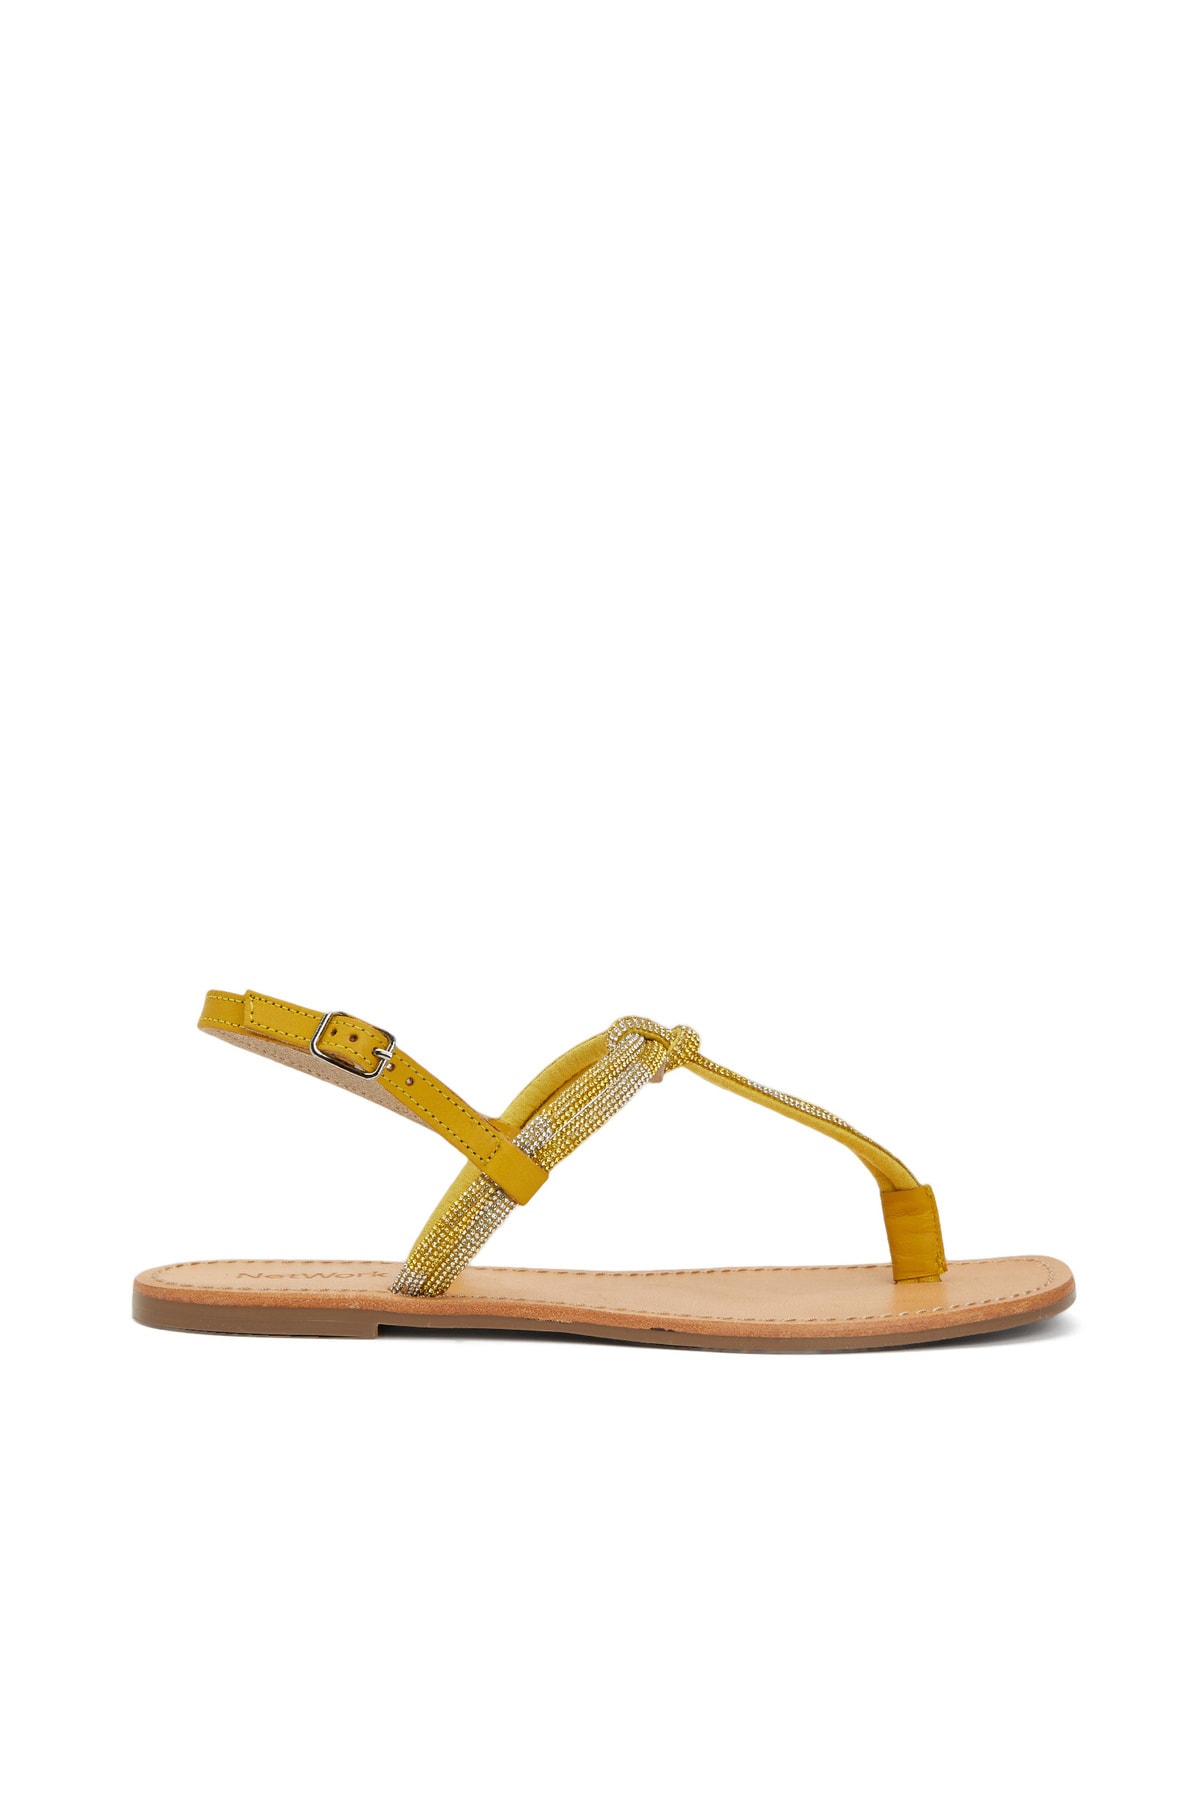 сандалии женские желтые Желтые женские кожаные сандалии Network, желтый